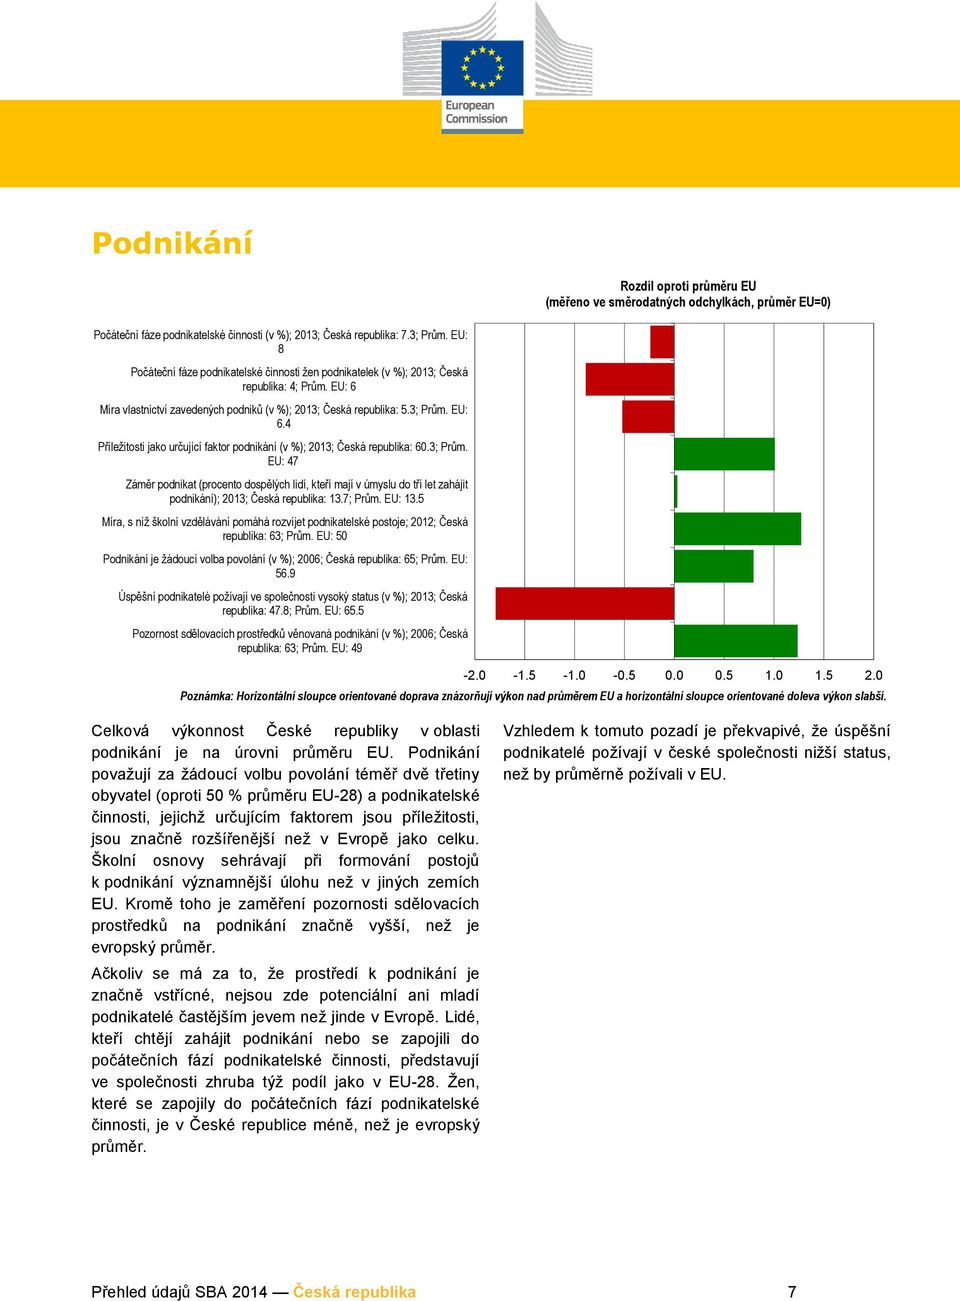 EU: 6.4 Příležitosti jako určující faktor podnikání (v %); 2013; Česká republika: 60.3; Prům.